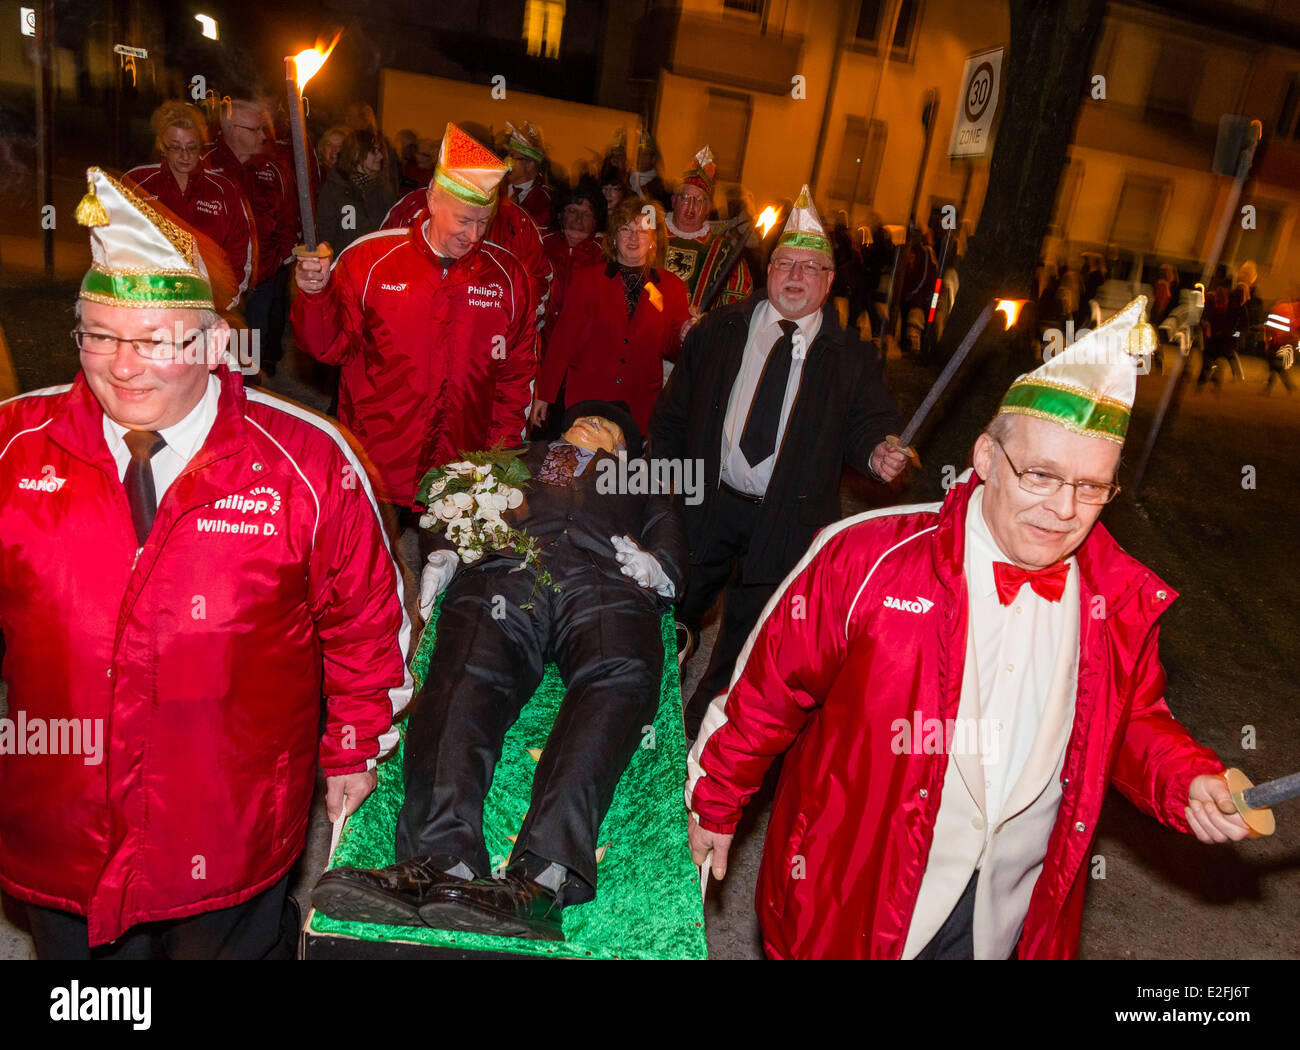 Carnevale tedesco i festaioli di buon umore trasportare il defunto Bacco dummy per la sua sepoltura cremazione con una fiaccolata. Foto Stock